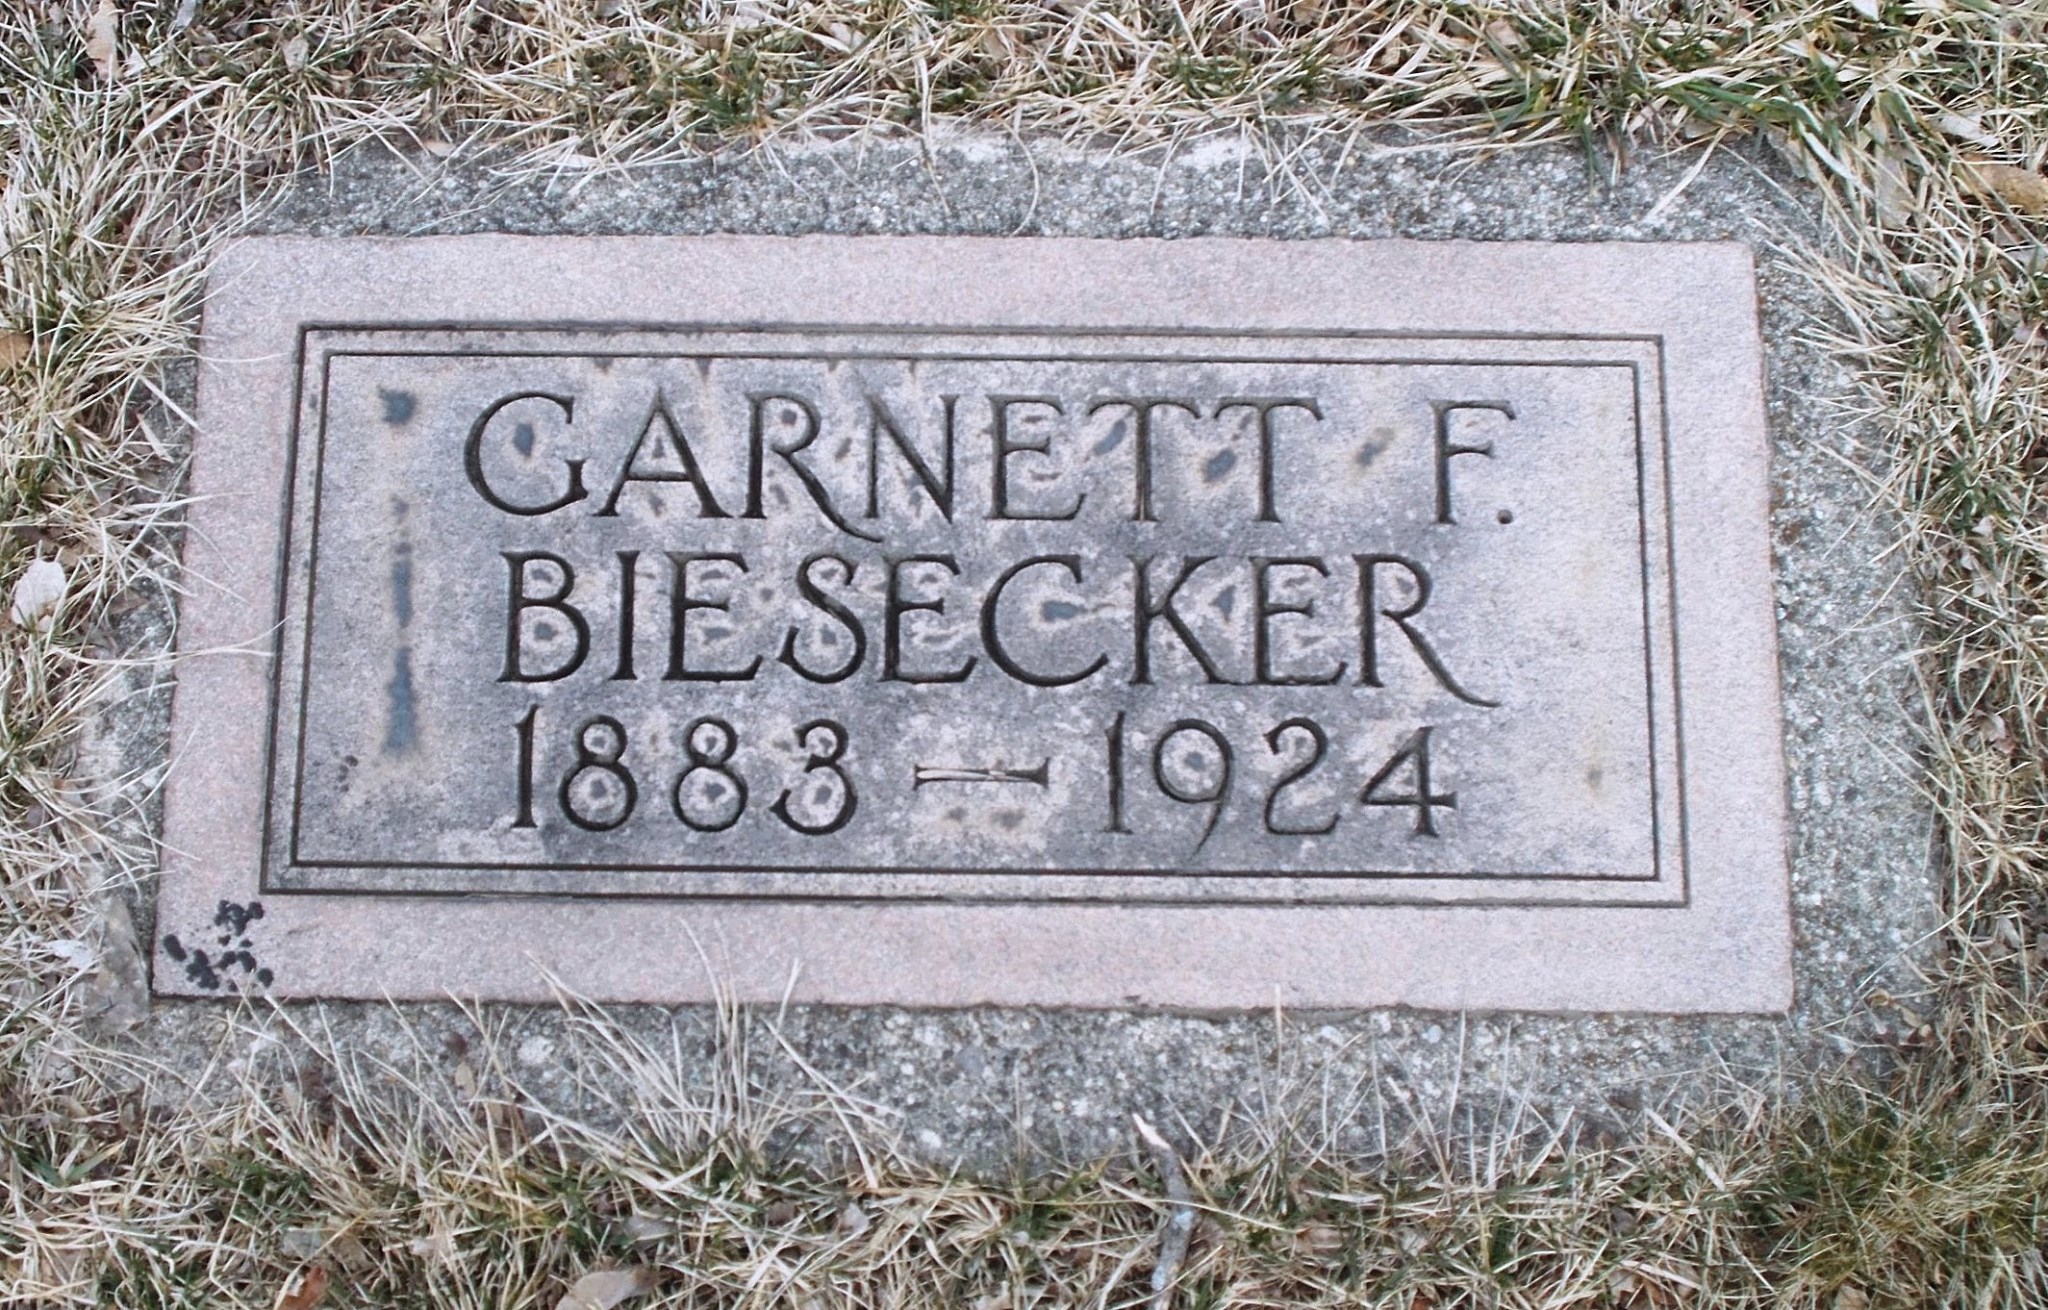 Garnett F Biesecker